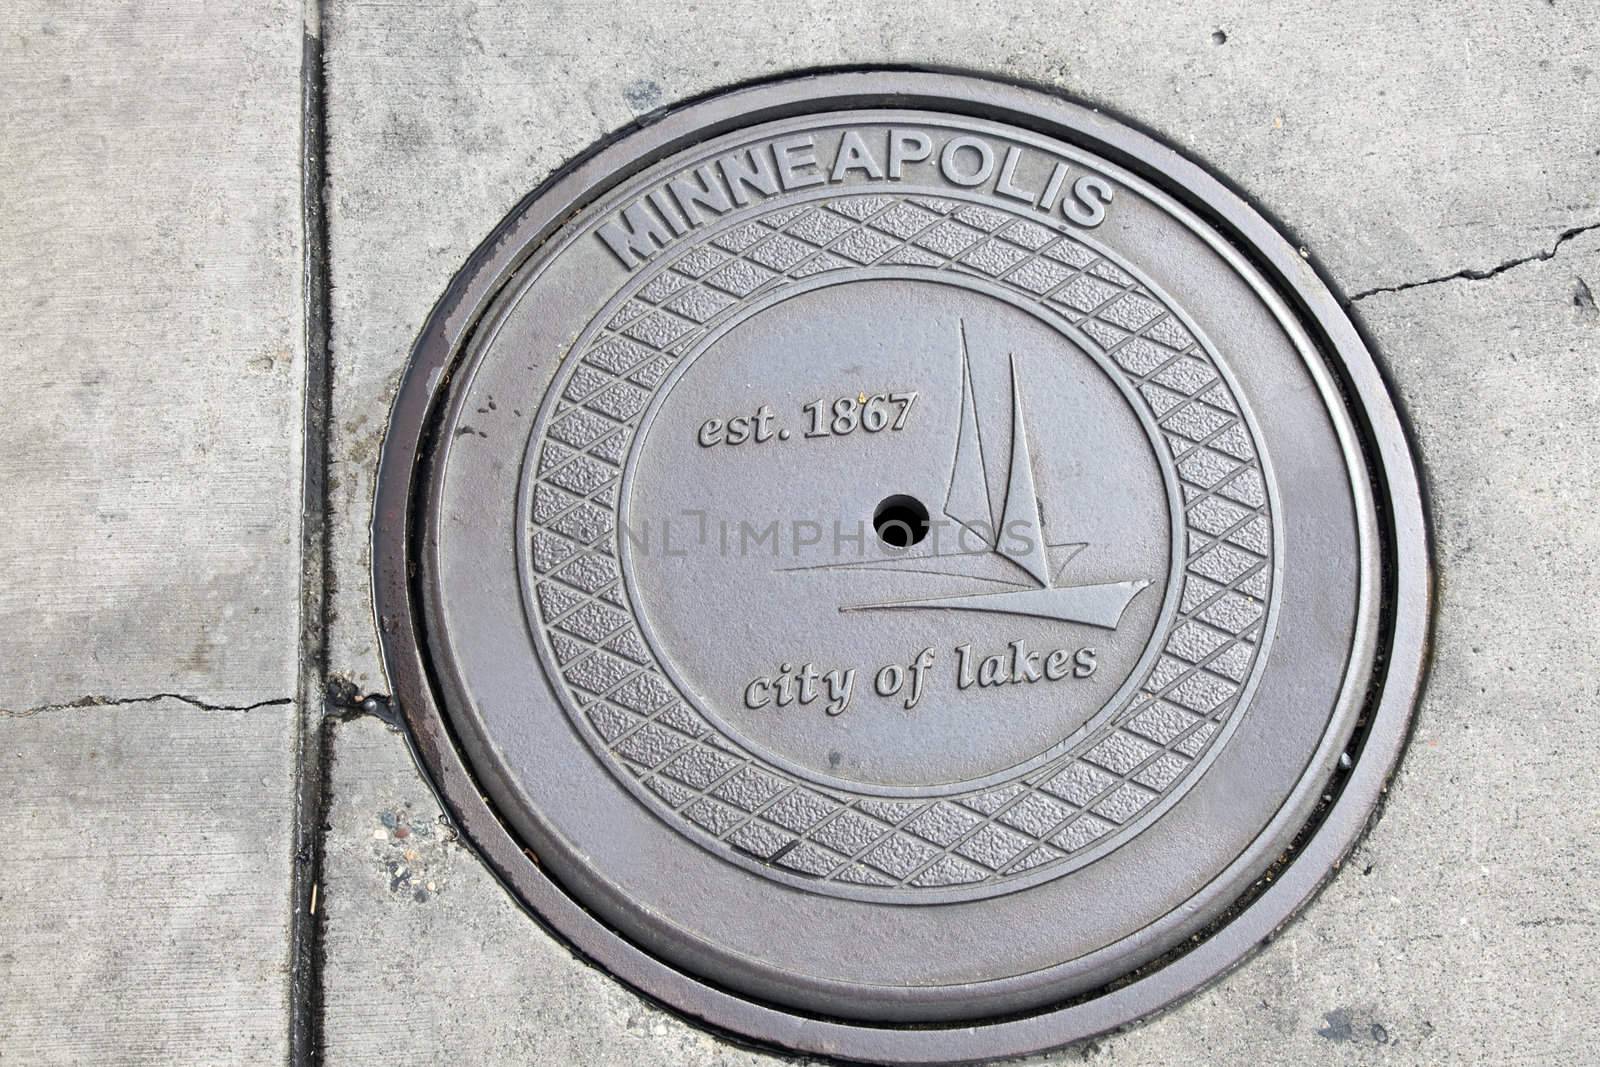 Manhole seen in Minneapolis, Minnesota.